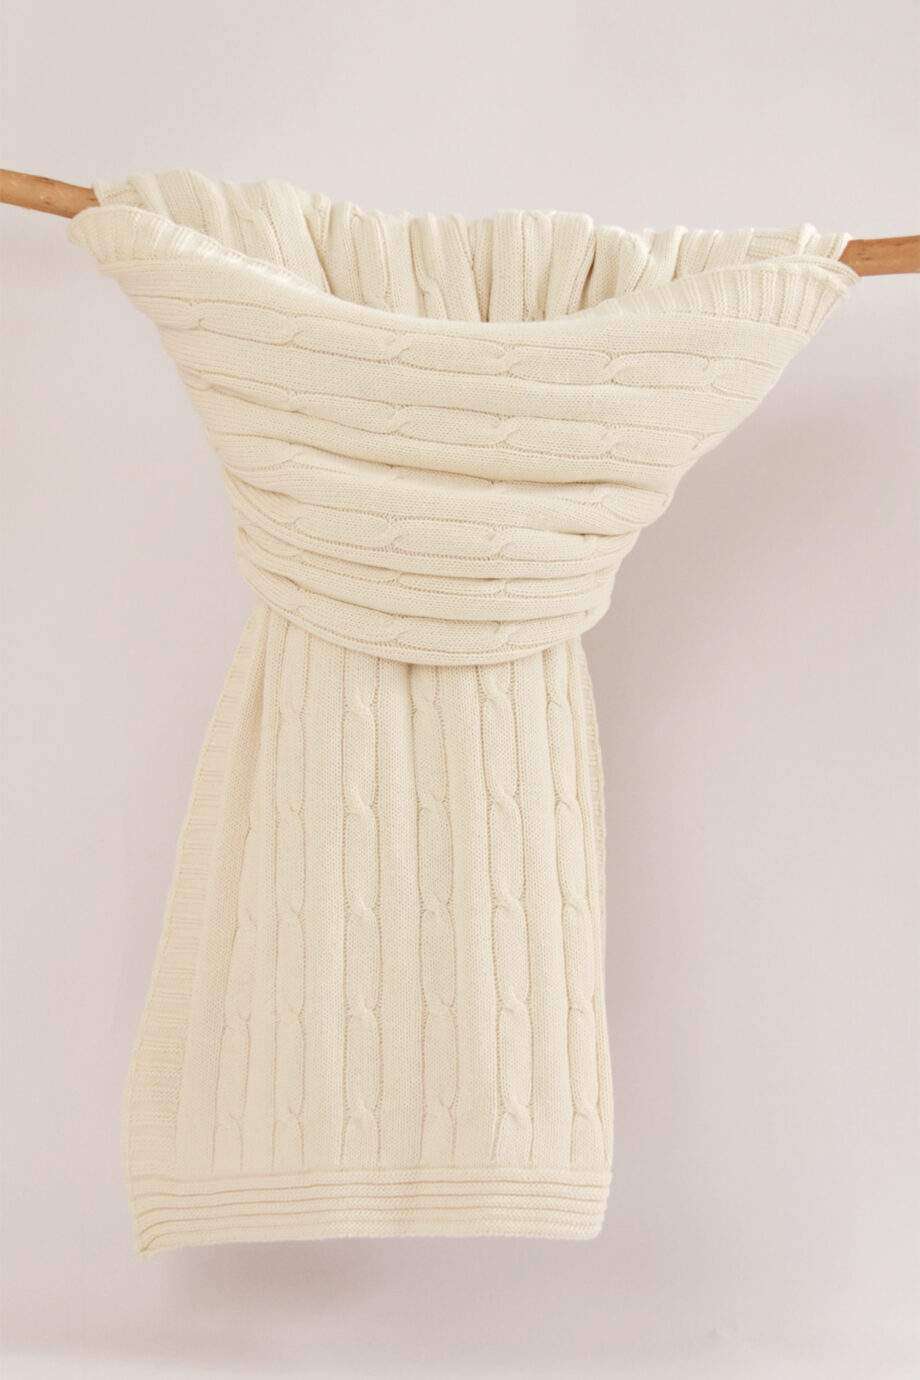 twist ecru knitted cotton throw xlarge